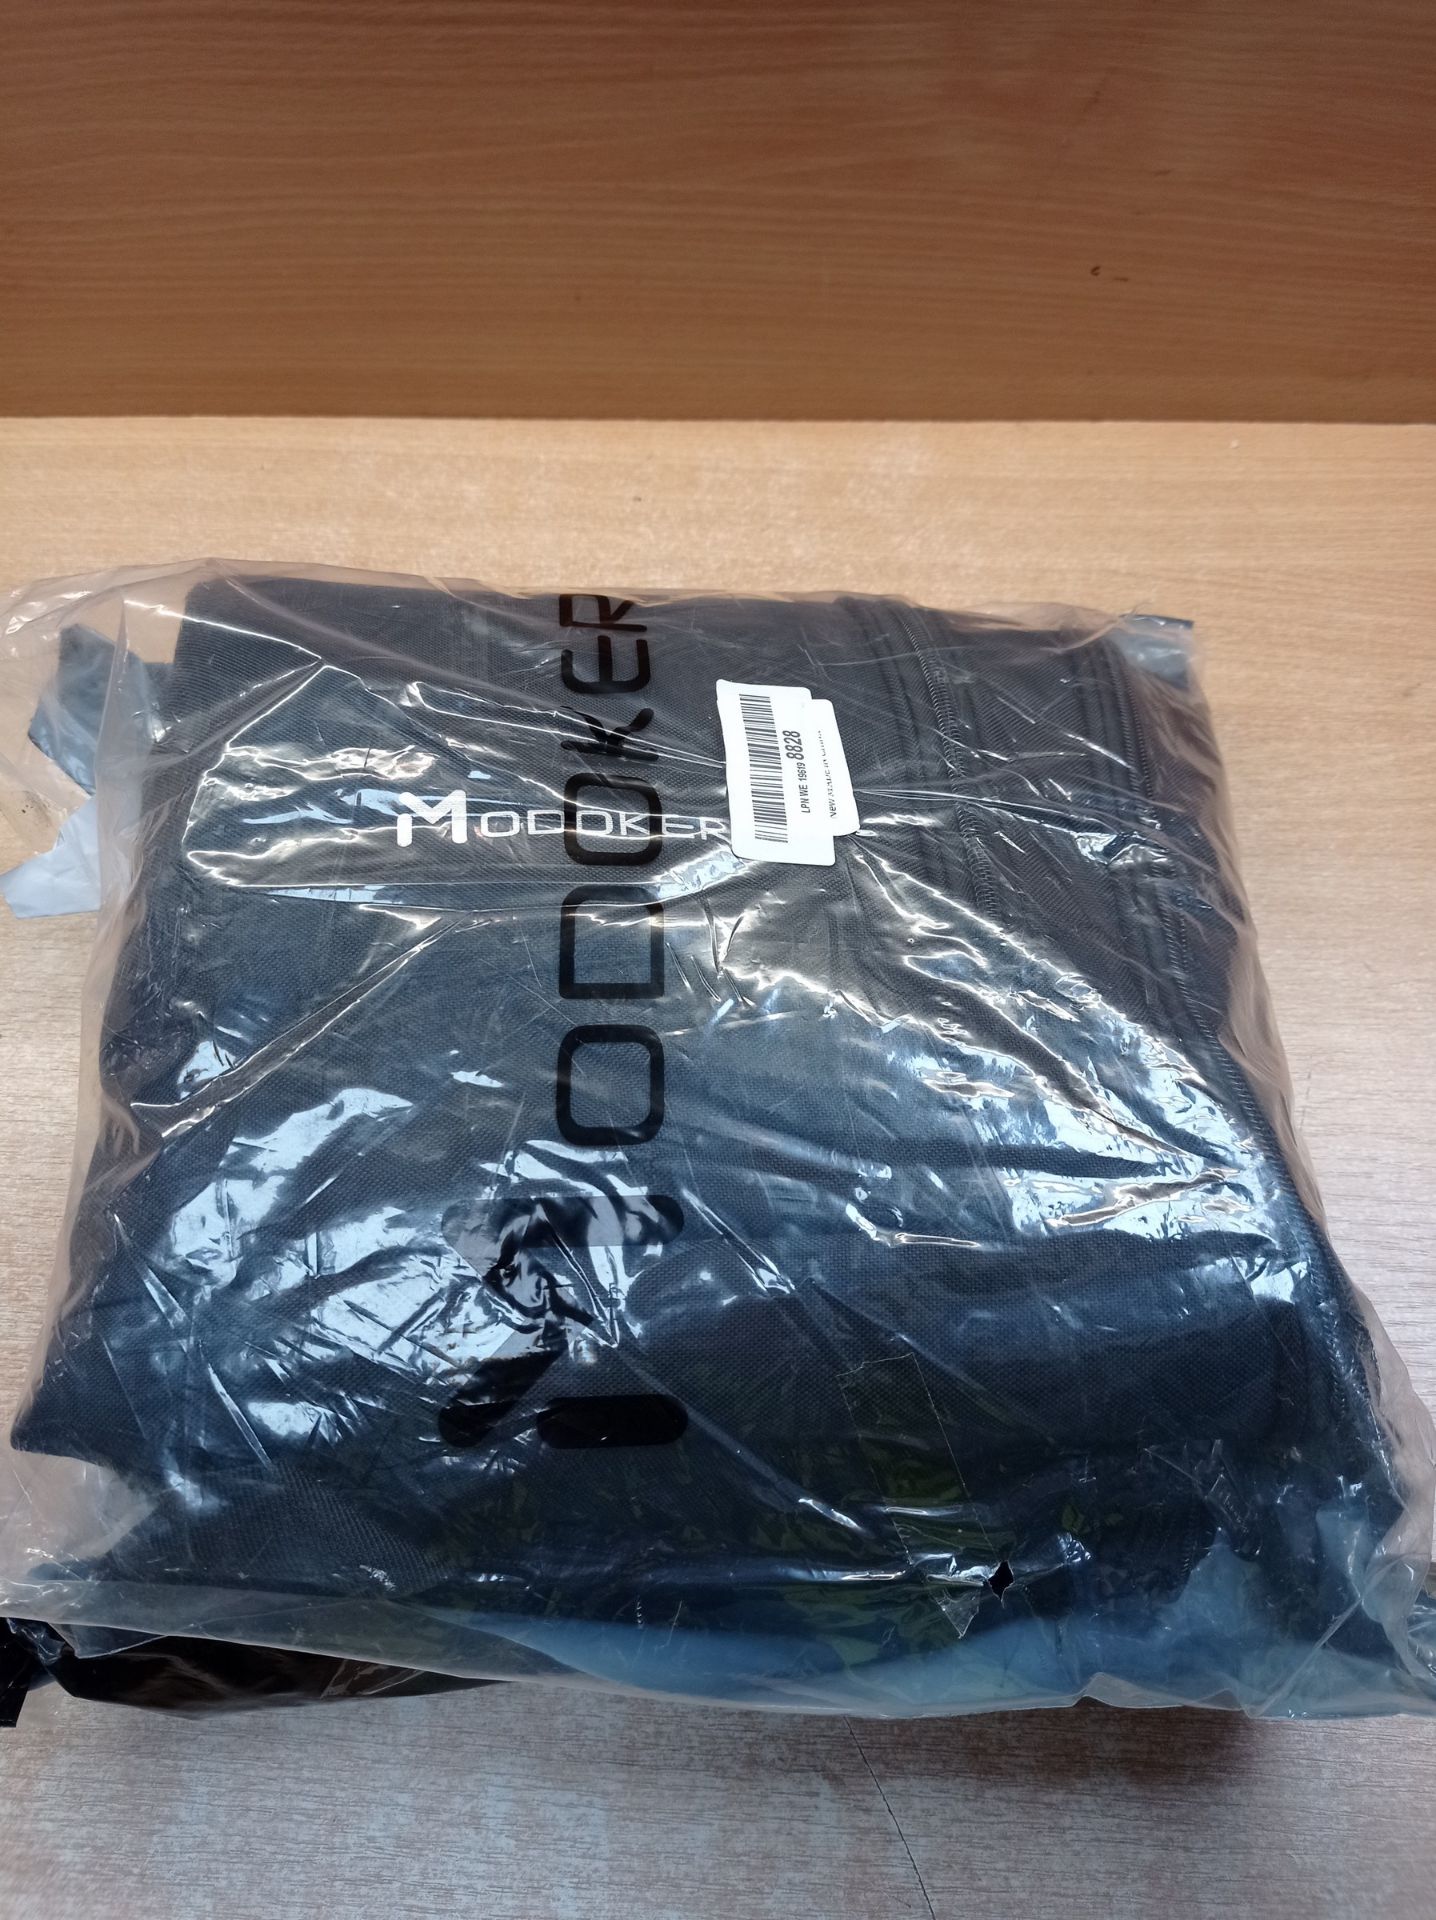 RRP £52.54 Modoker Convertible Suit Garment Dufel Bag - Image 2 of 2